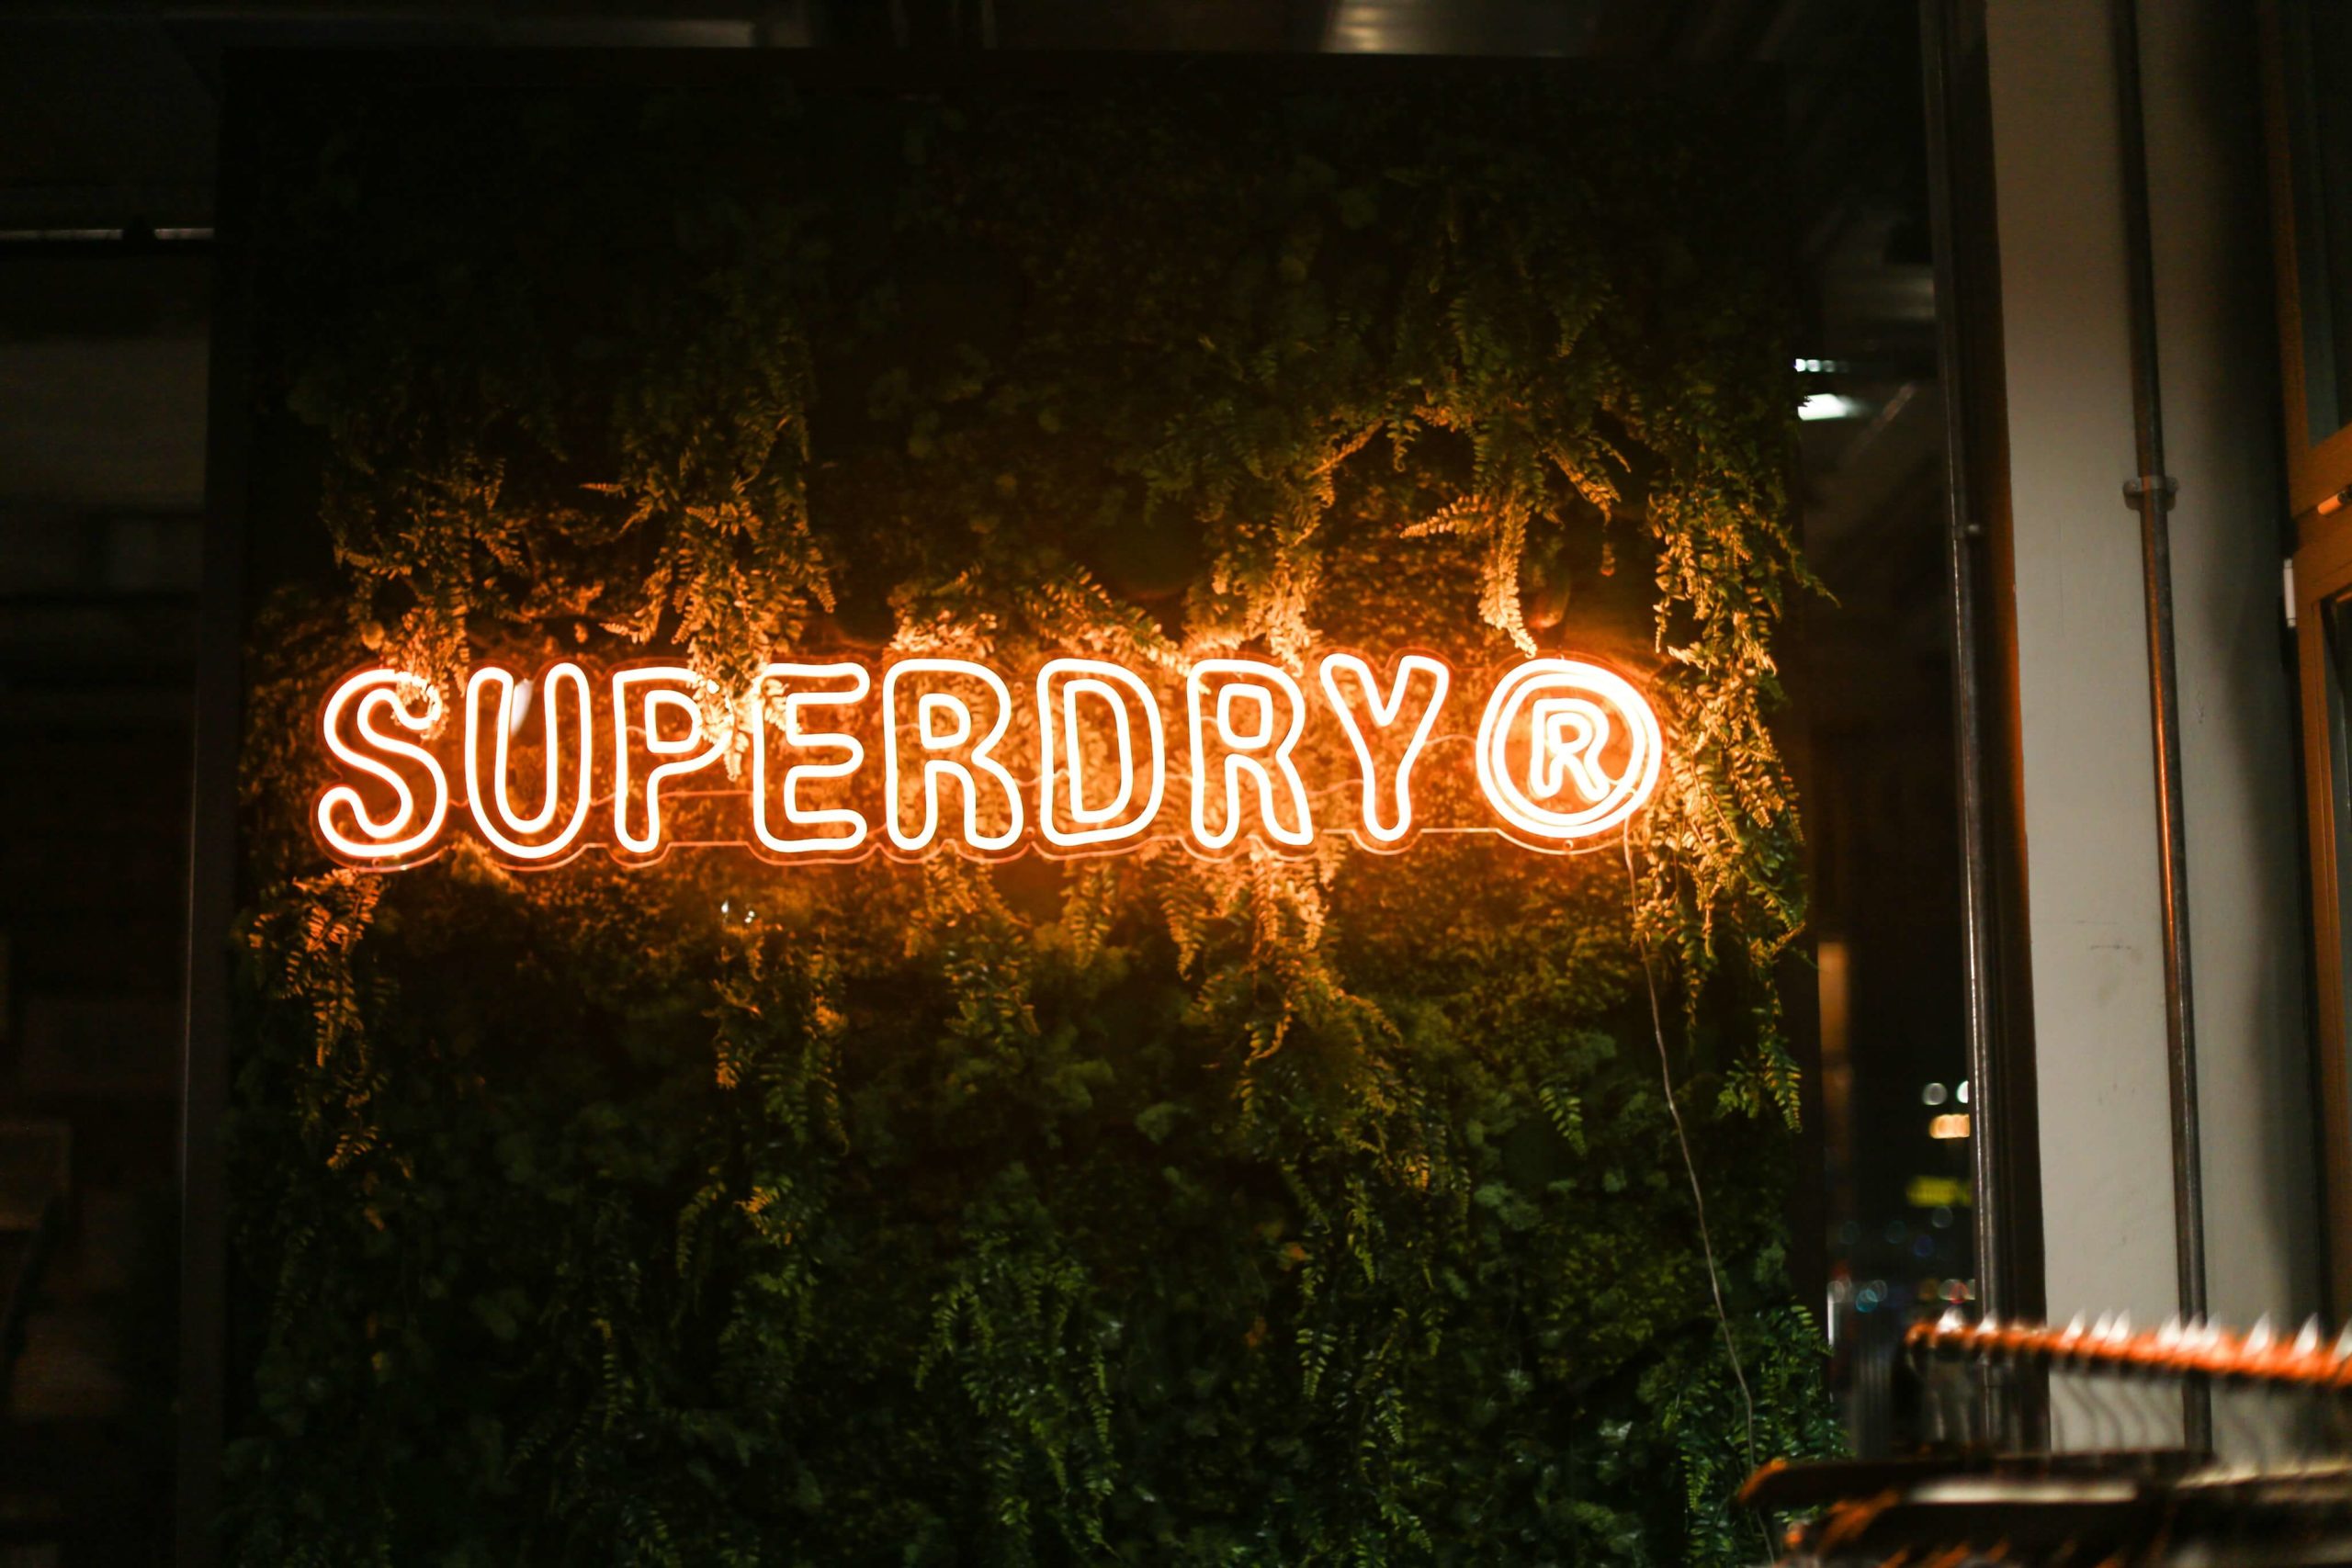 Die Marke Superdry hat einen Showroom in Berlin eröffnet.